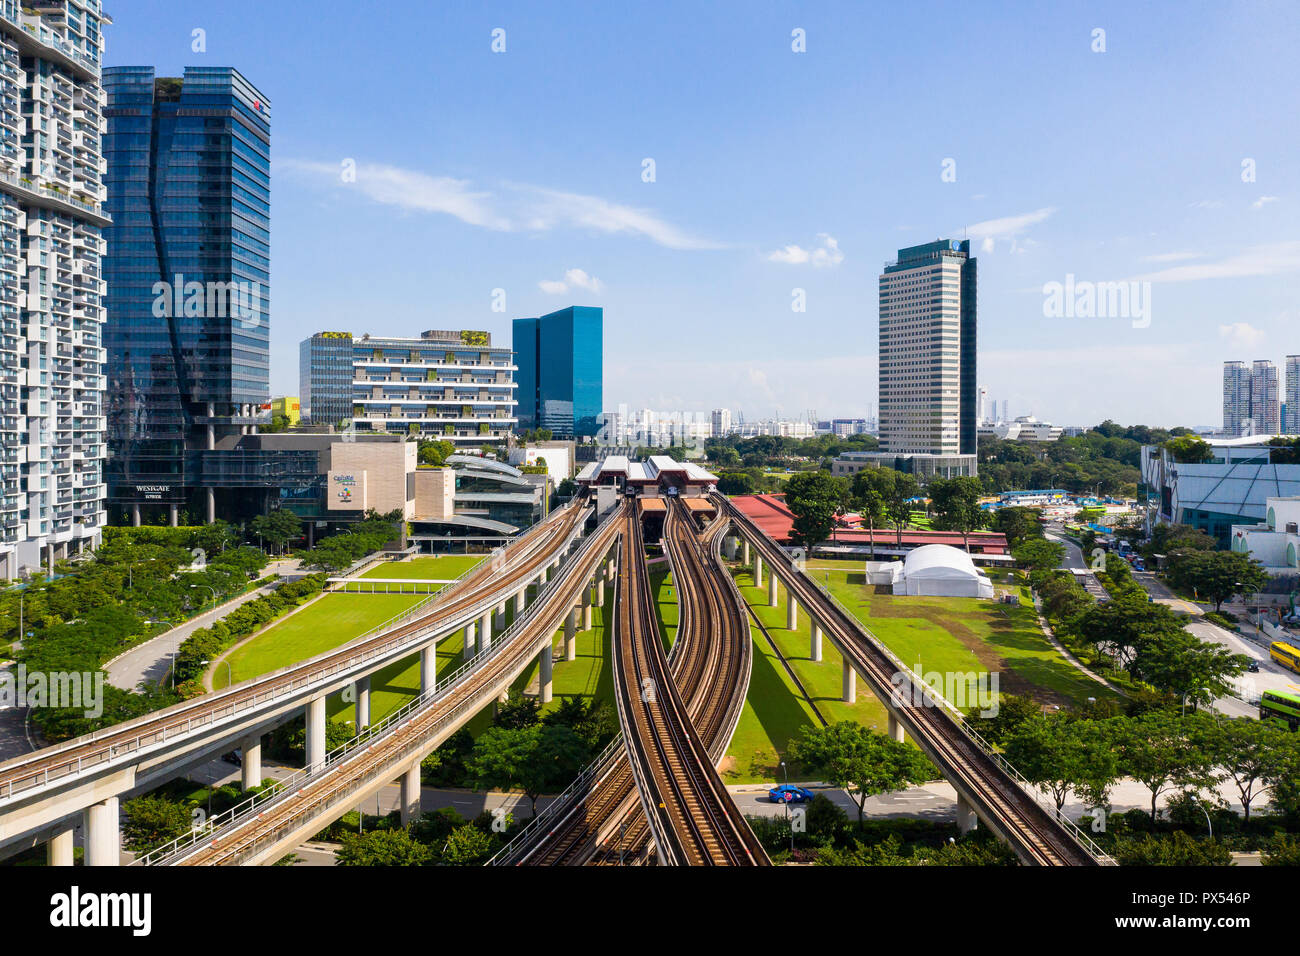 Vue aérienne de plusieurs voies ferrées à l'Est de Jurong, espace pour devenir quartier central des affaires de Singapour dans l'avenir. Banque D'Images